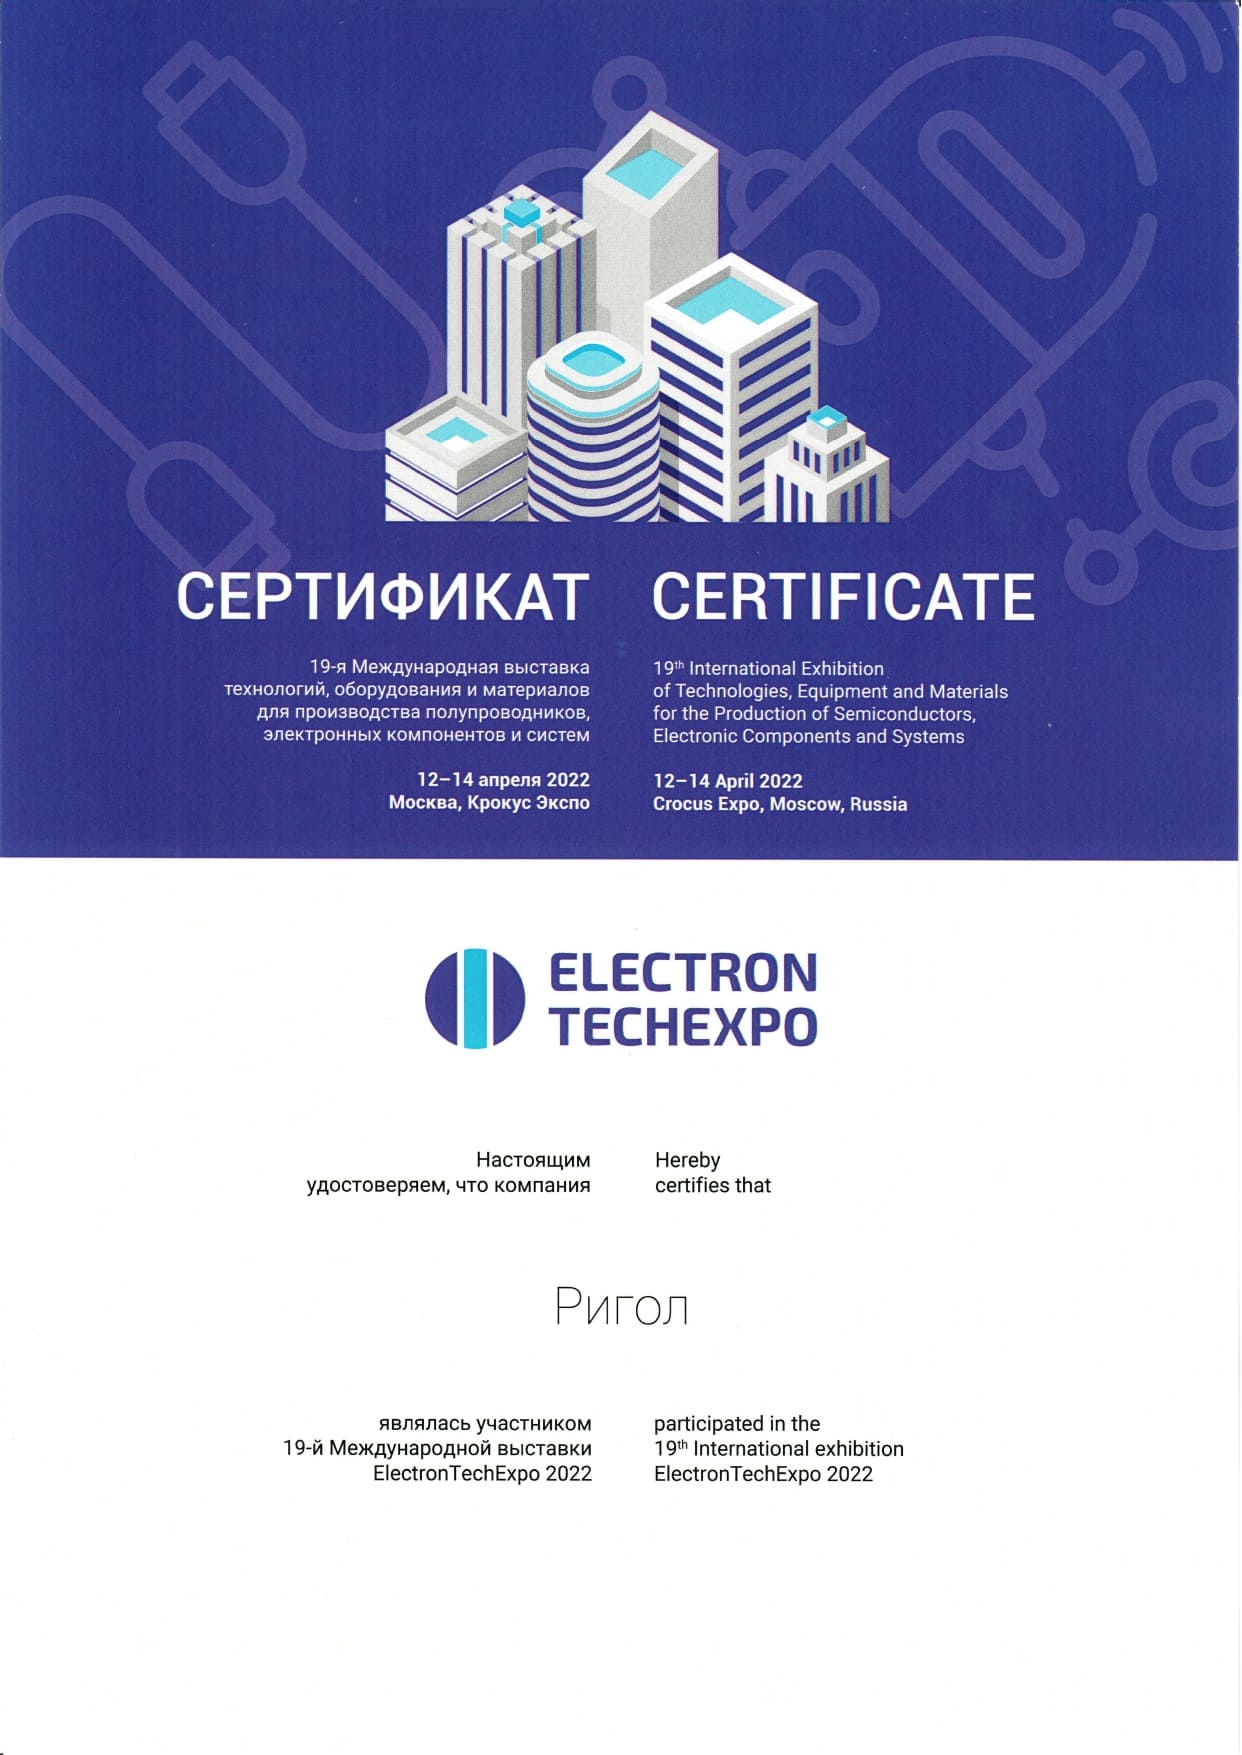 Сертификат участника международной выставки ElectronTechExpo 2022